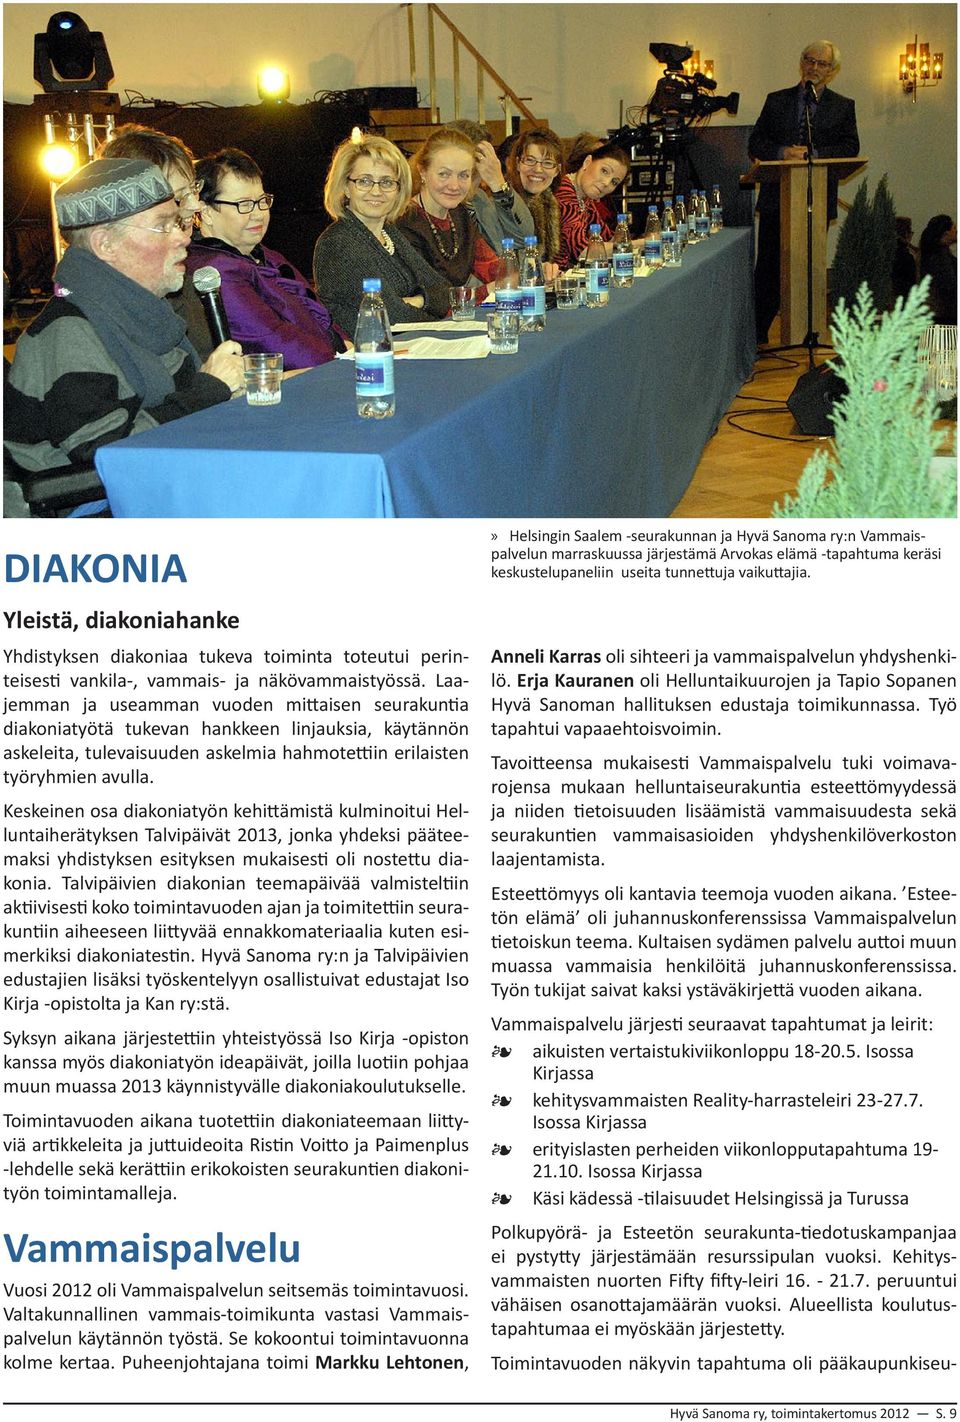 Keskeinen osa diakoniatyön kehittämistä kulminoitui Helluntaiherätyksen Talvipäivät 2013, jonka yhdeksi pääteemaksi yhdistyksen esityksen mukaisesti oli nostettu diakonia.